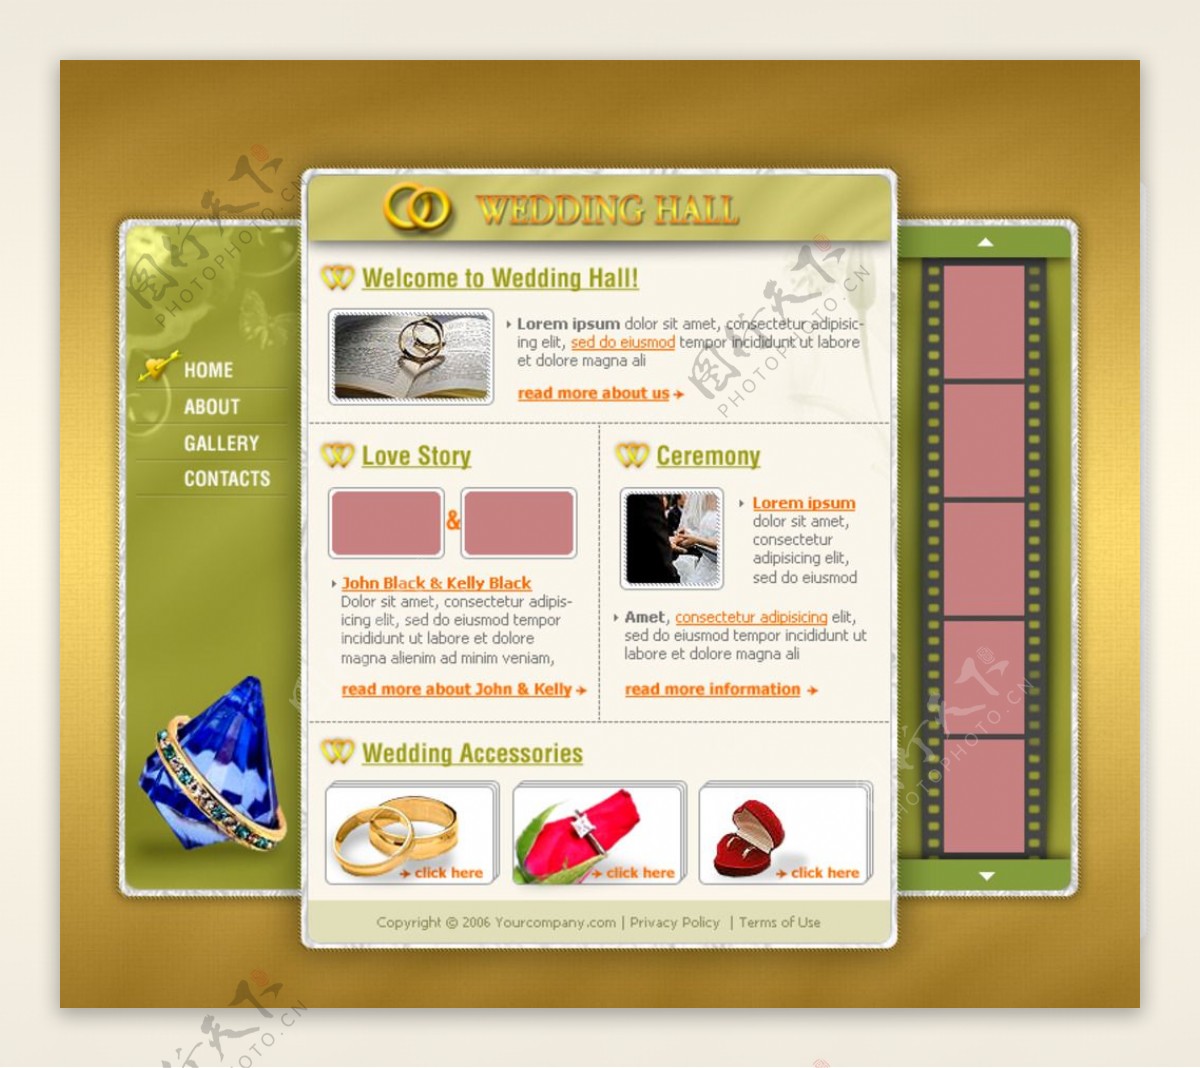 国外珠宝首饰酷站网页设计素图片